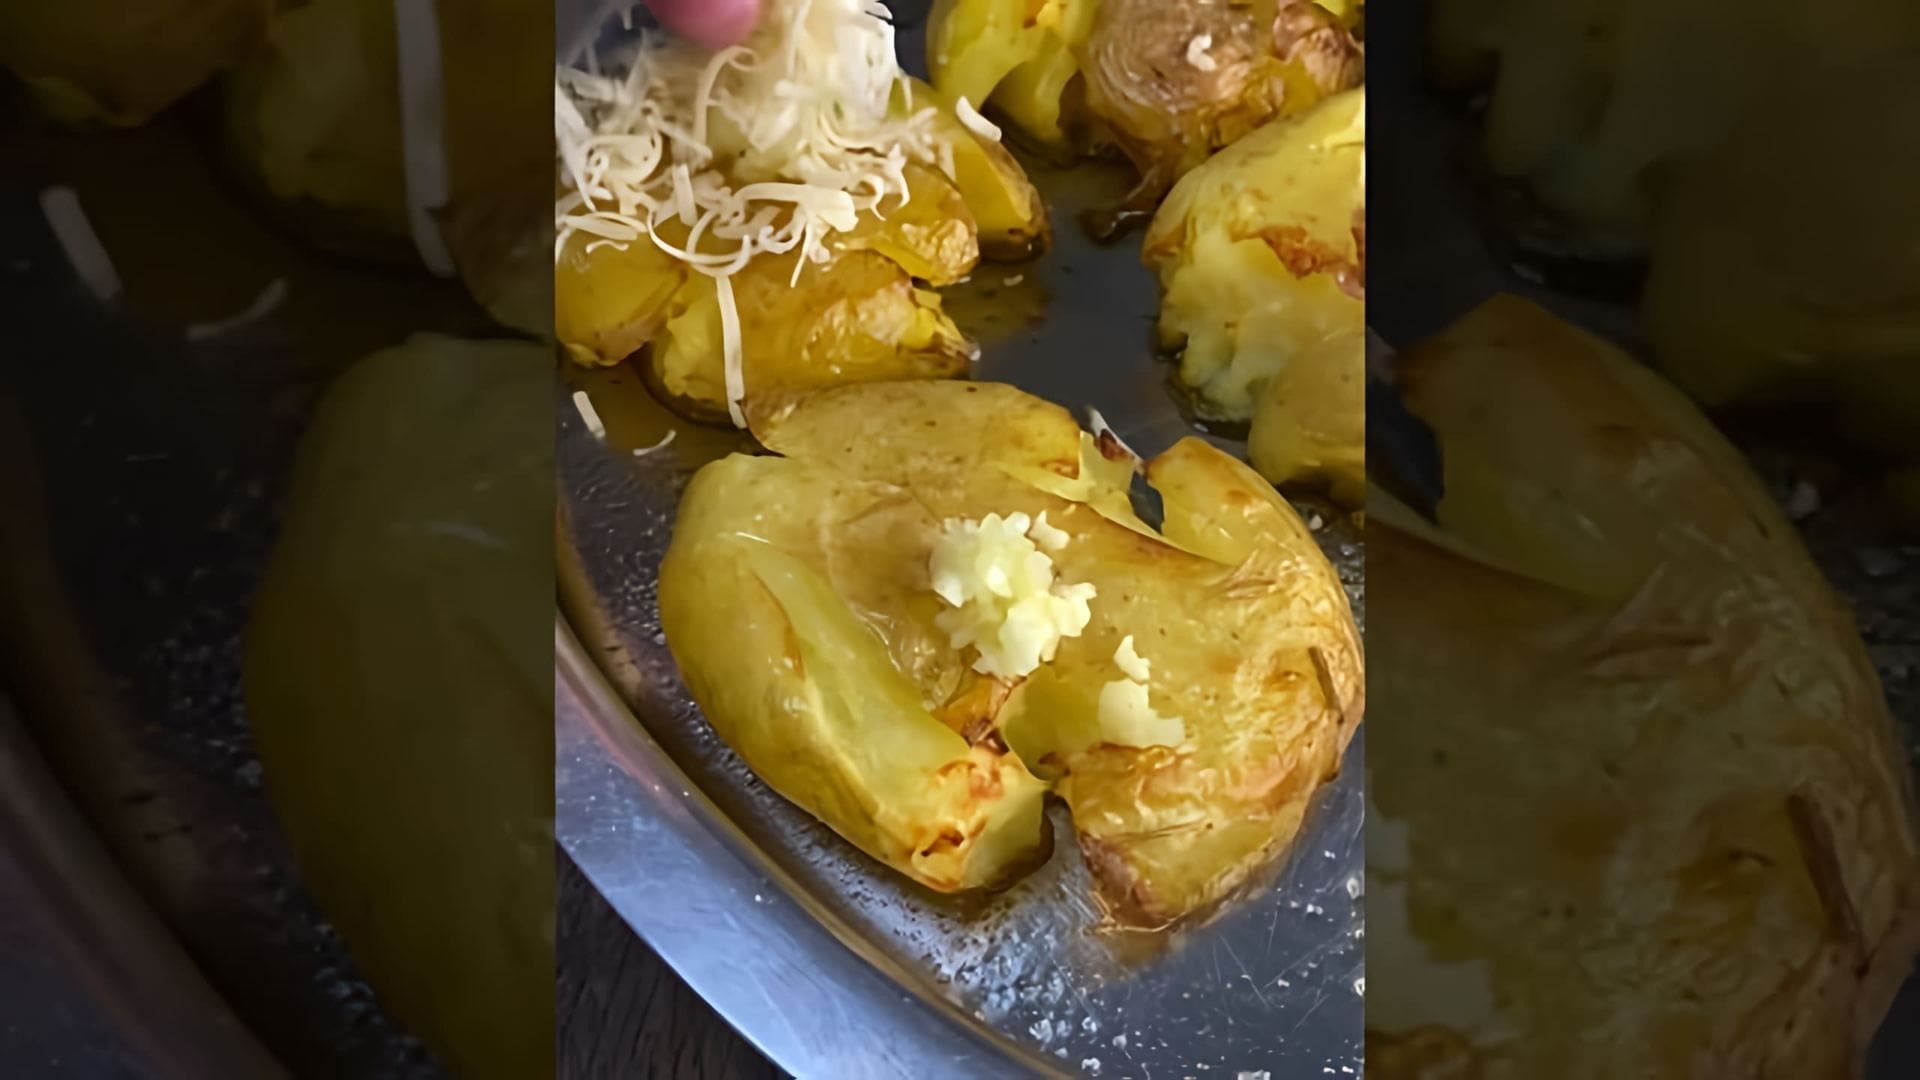 Вкуснейшая картошка с сыром и сметаной - это видео-ролик, который показывает процесс приготовления вкусного и сытного блюда